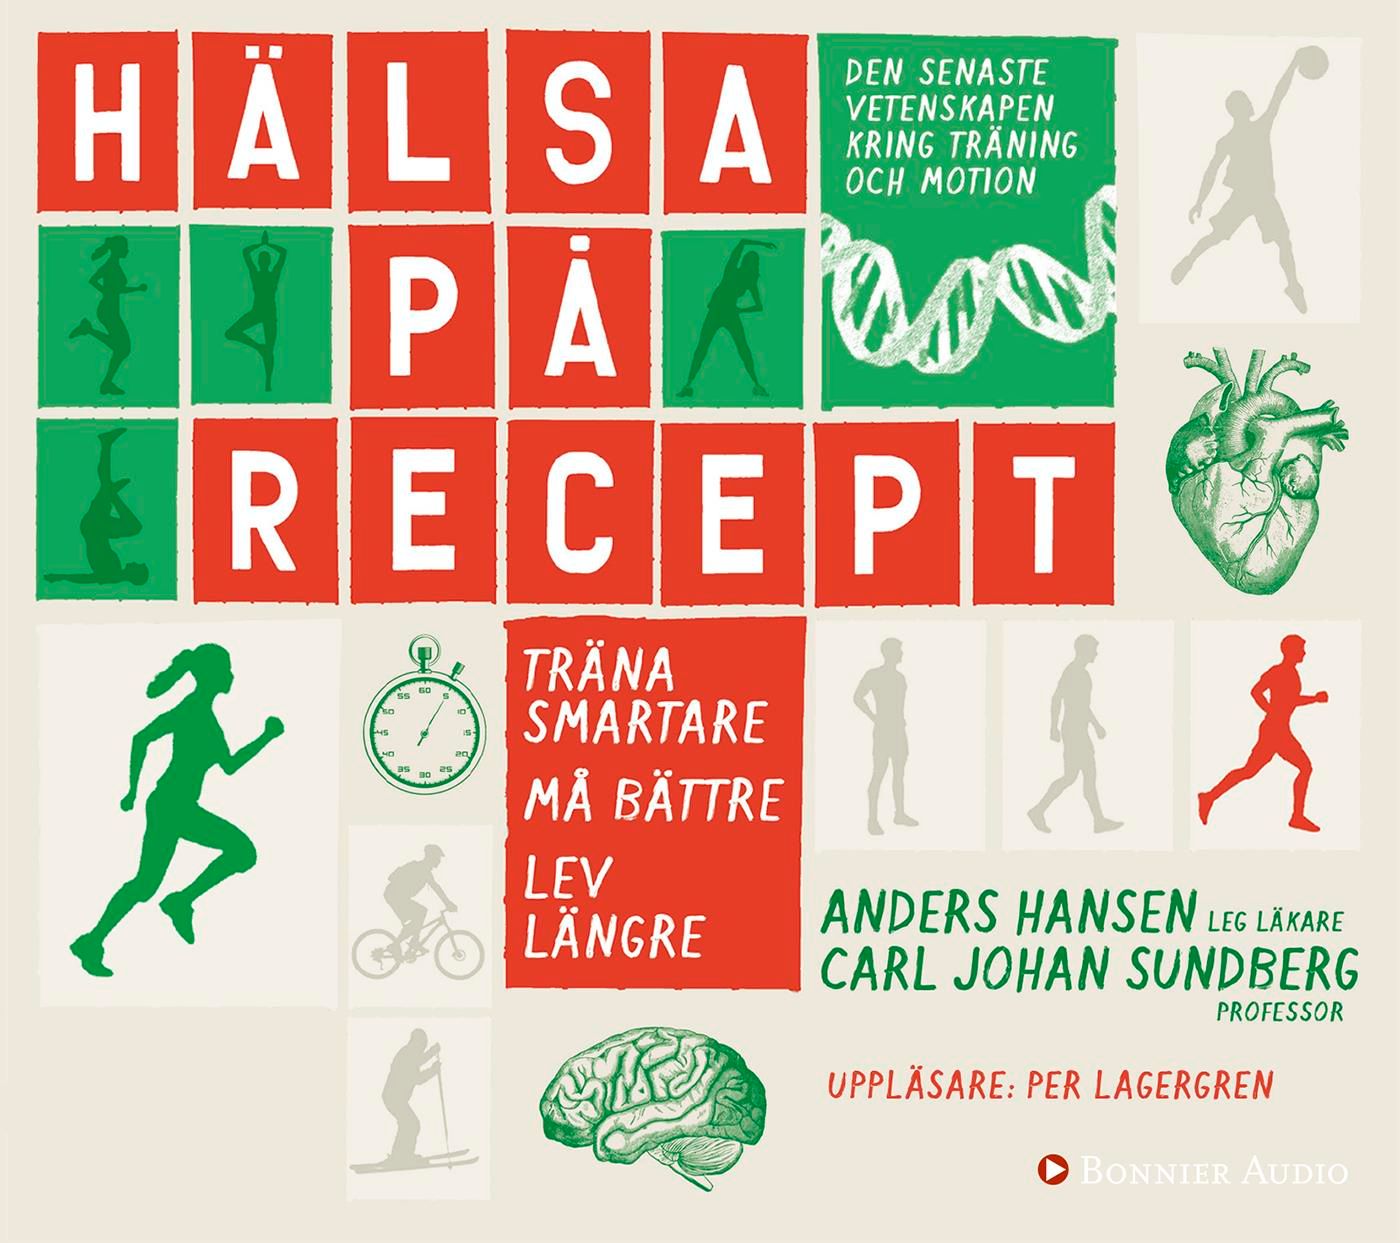 Hälsa på recept : träna smartare, må bättre, lev längre, ljudbok av Anders Hansen, Carl Johan Sundberg